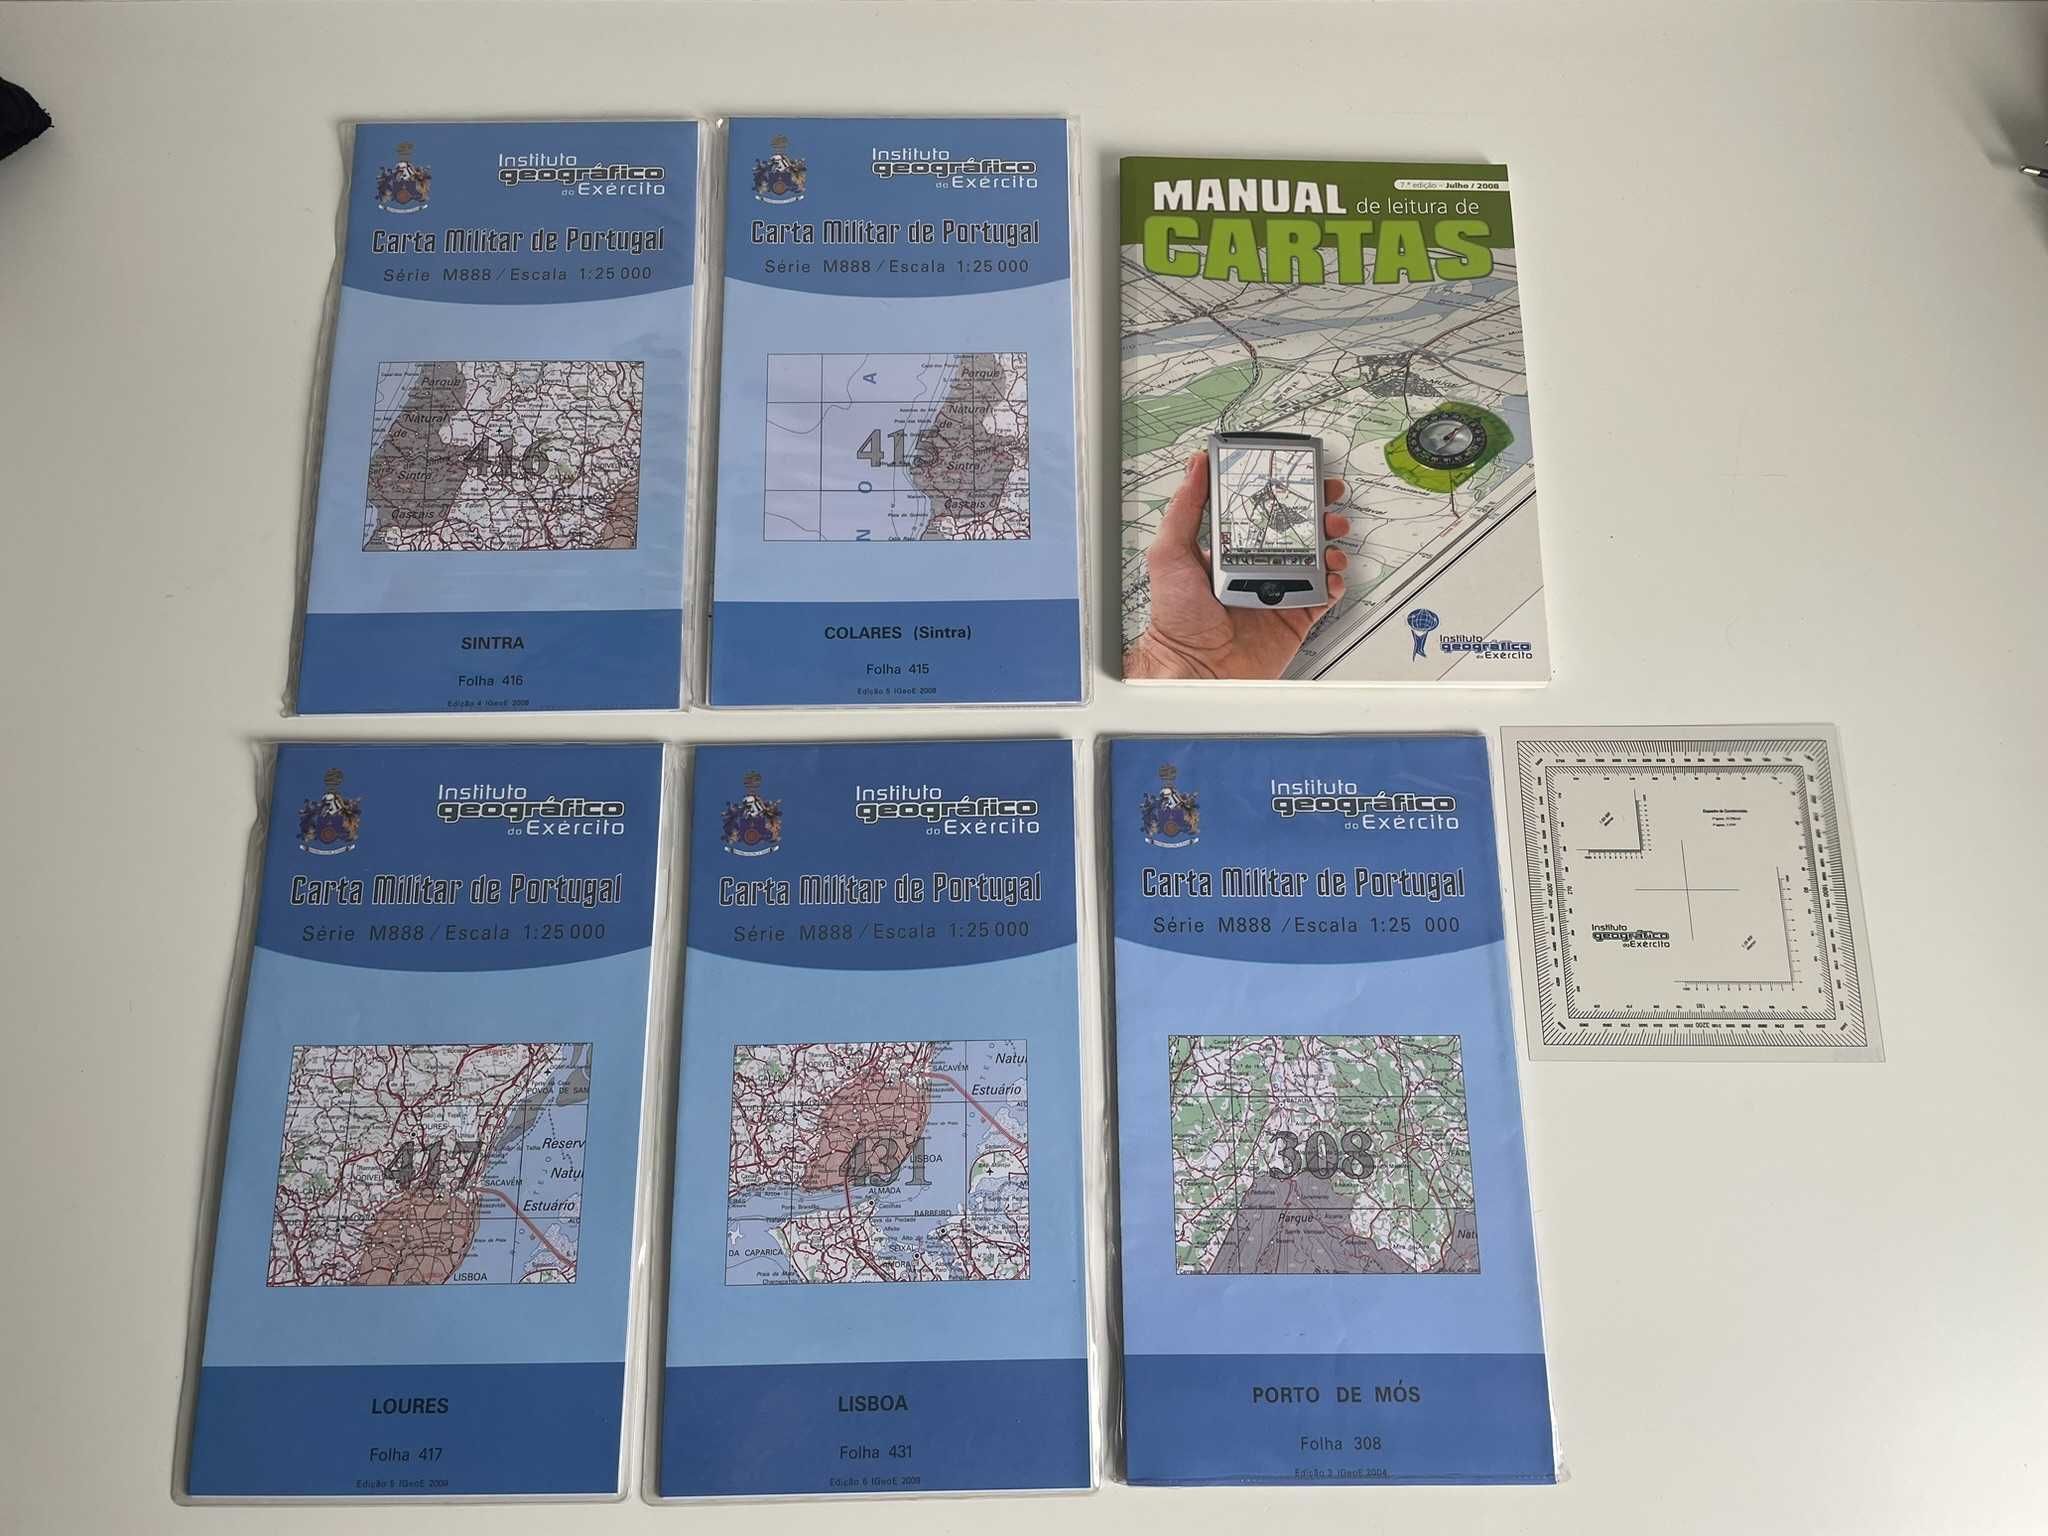 Cartas Topográficas e Manual de Leitura de Cartas